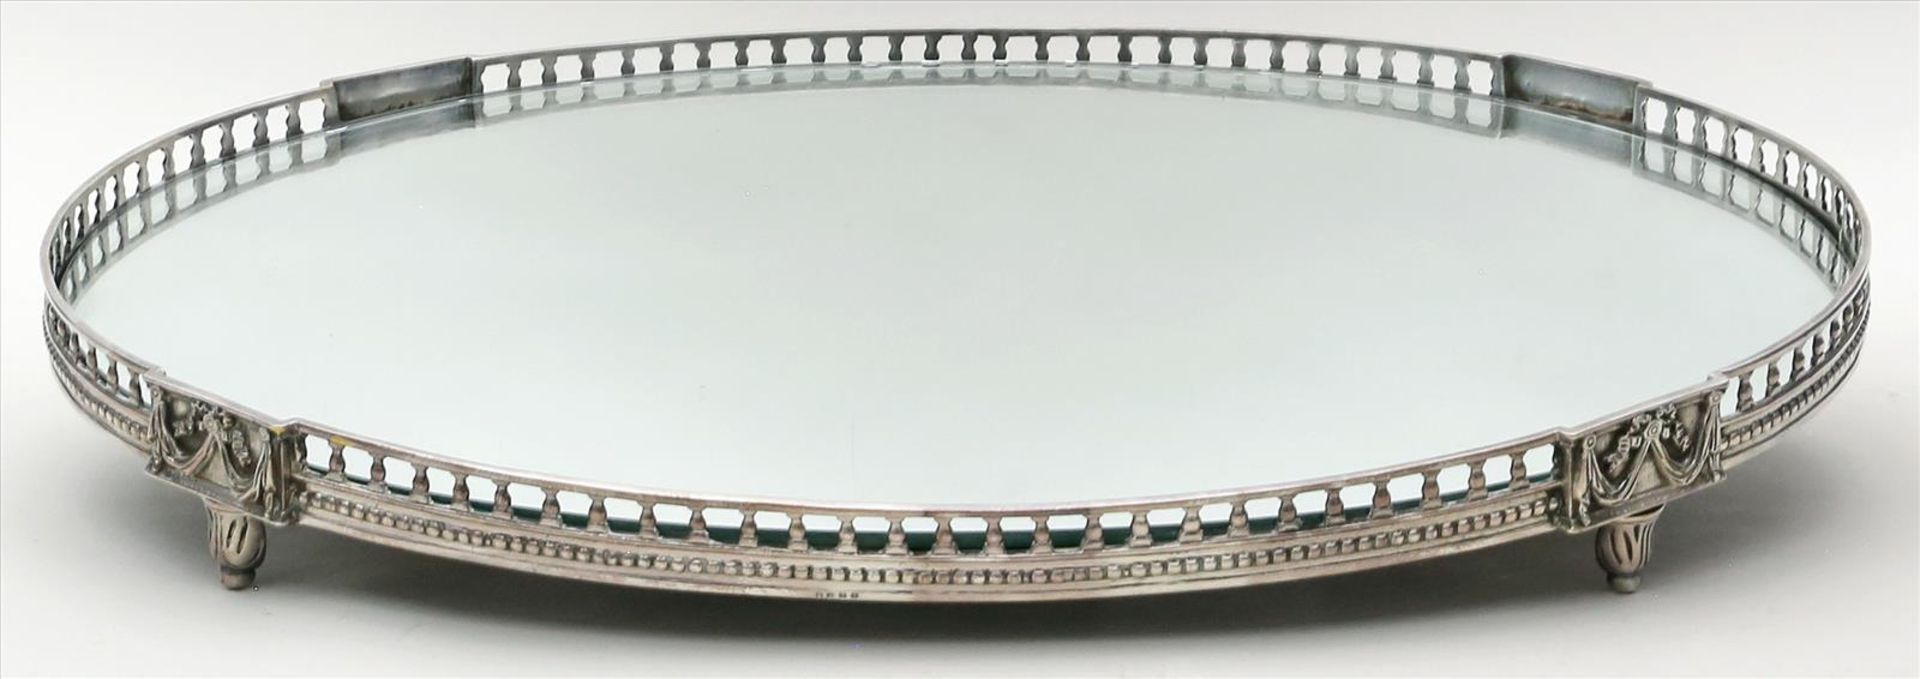 Großes Plateau im Stil Louis XVI.Metallgestell mit Ornamentrelief, ovaler Spiegeleinsatz. 20. Jh. 8x